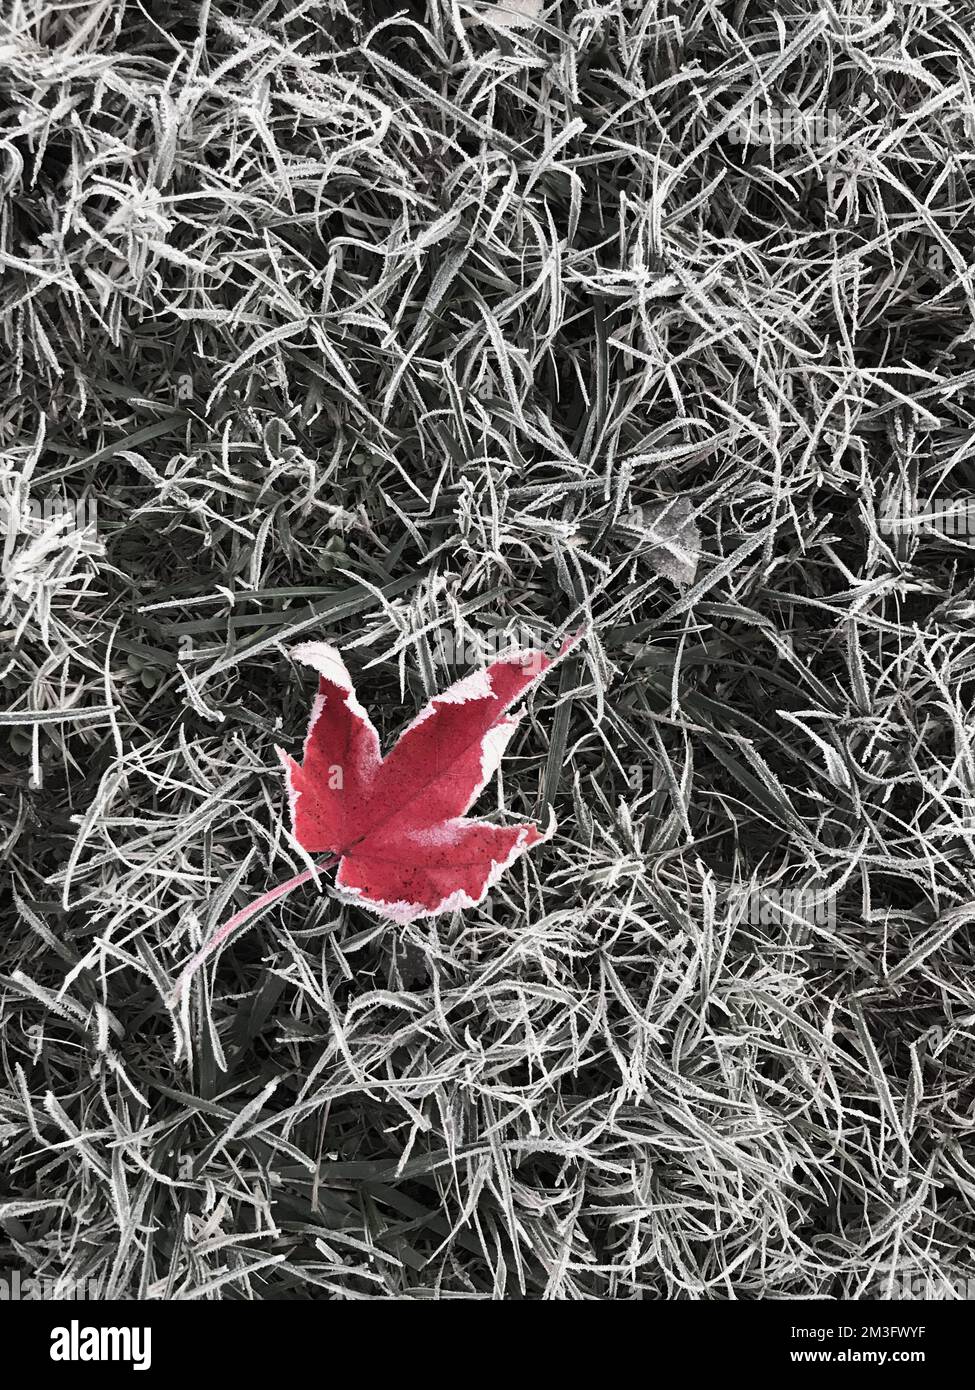 Feuille d'érable rouge unique sur l'herbe gelée après un gel dur. Le fond d'herbe désaturé accentue la feuille. Banque D'Images